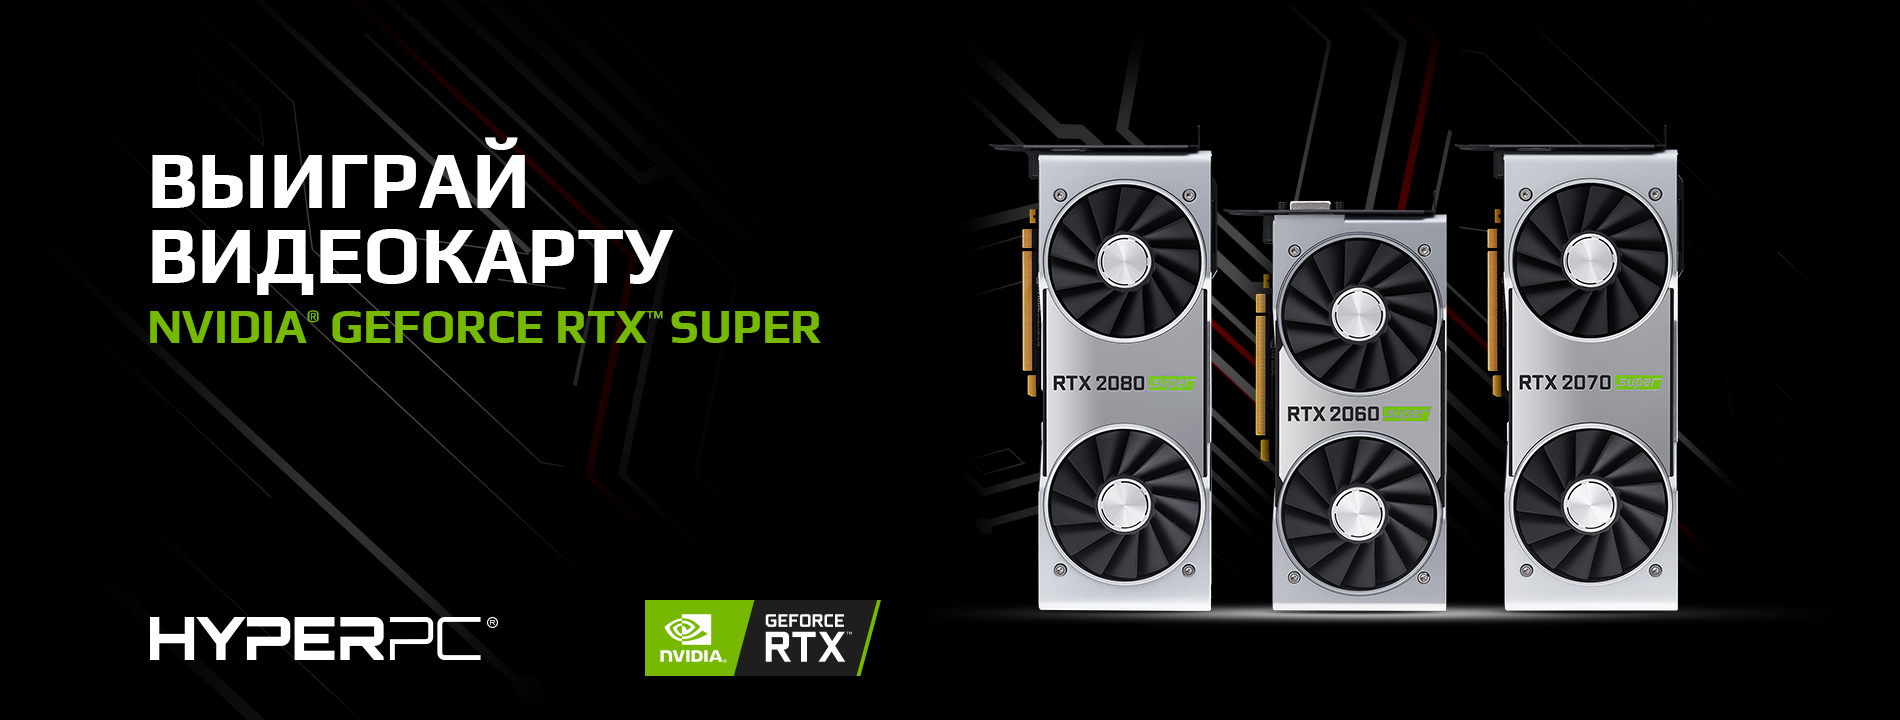 Выиграй видеокарту NVIDIA GeForce RTX SUPER